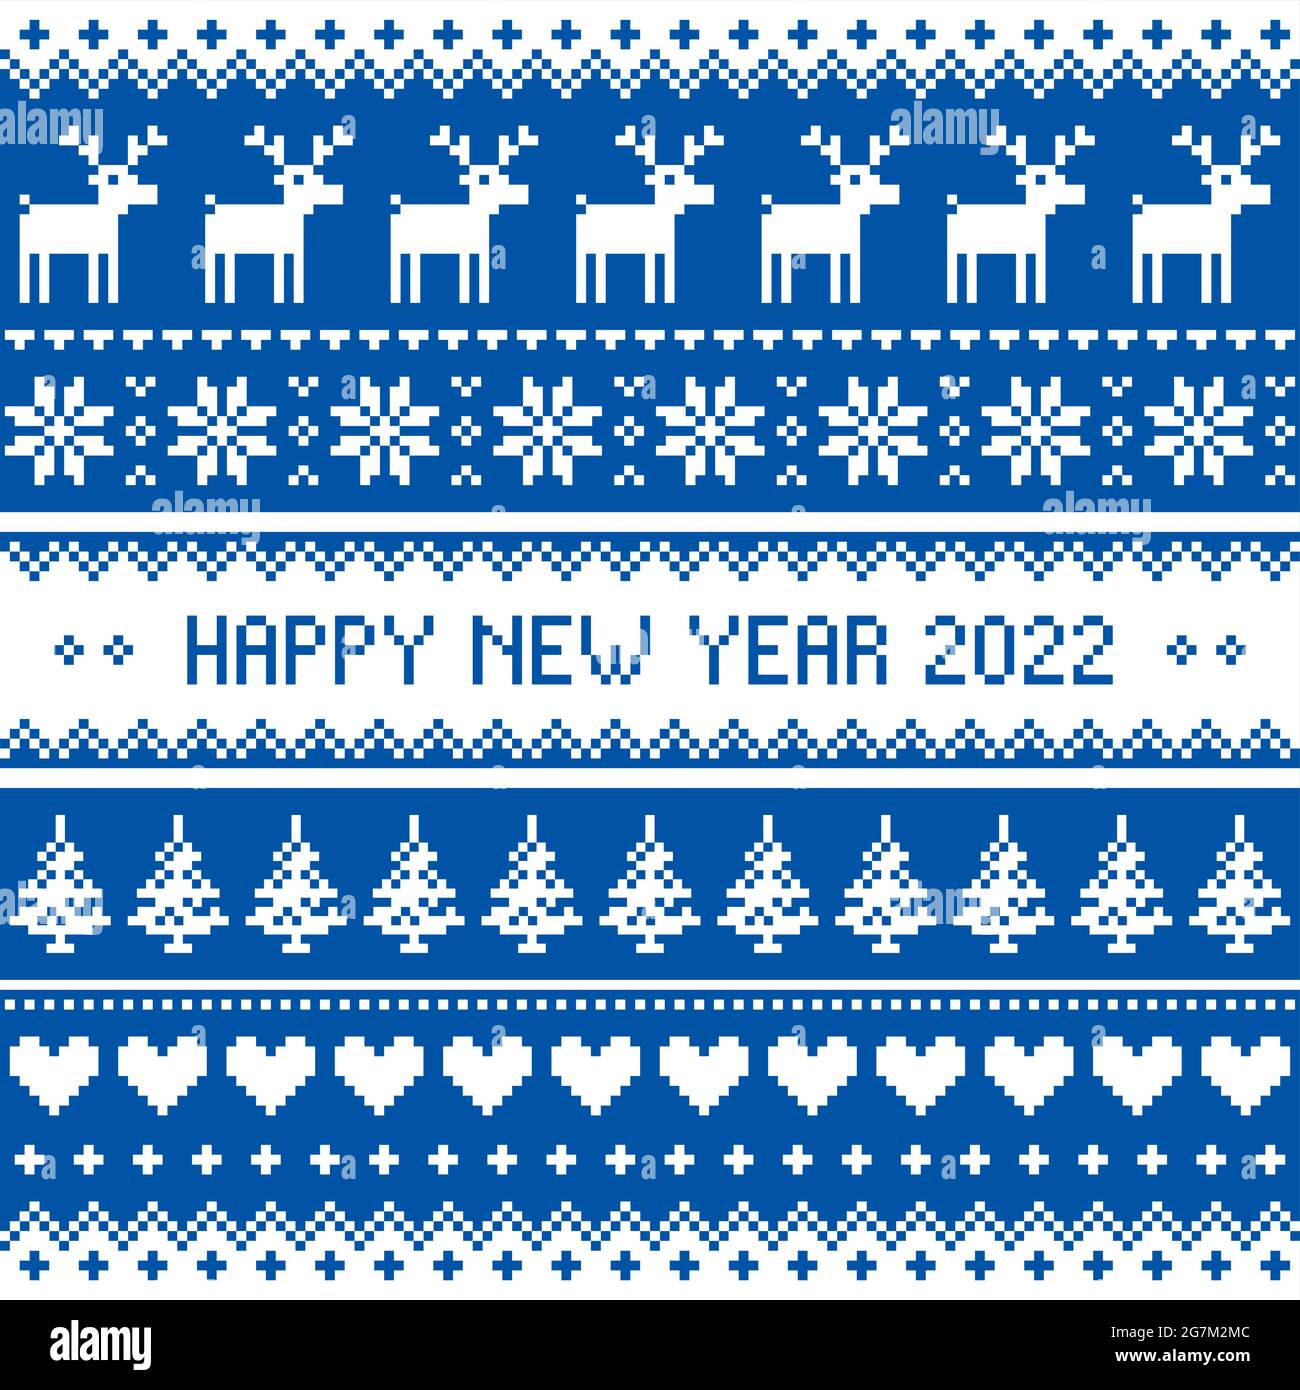 Happy New Year 2022 - skandinavisches Vektor-Nahtloses Kreuzstich-Muster oder Grußkarten-Design mit Redindeer und Schneeflocken Stock Vektor